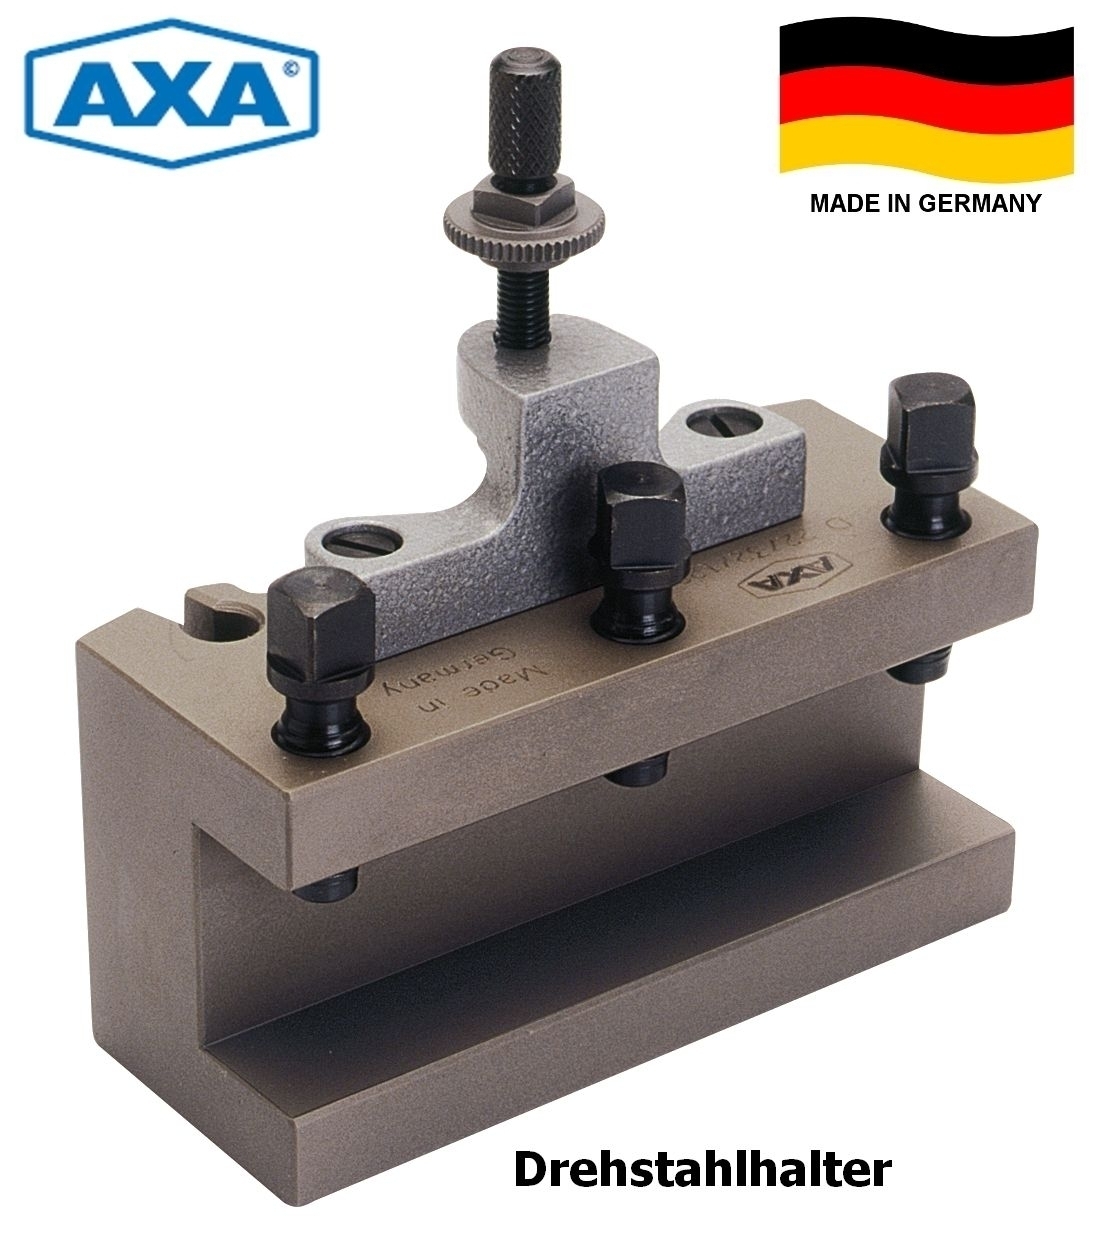 AXA Schnellwechsel-Drehstahlhalter CD 40170 | D33/40/170